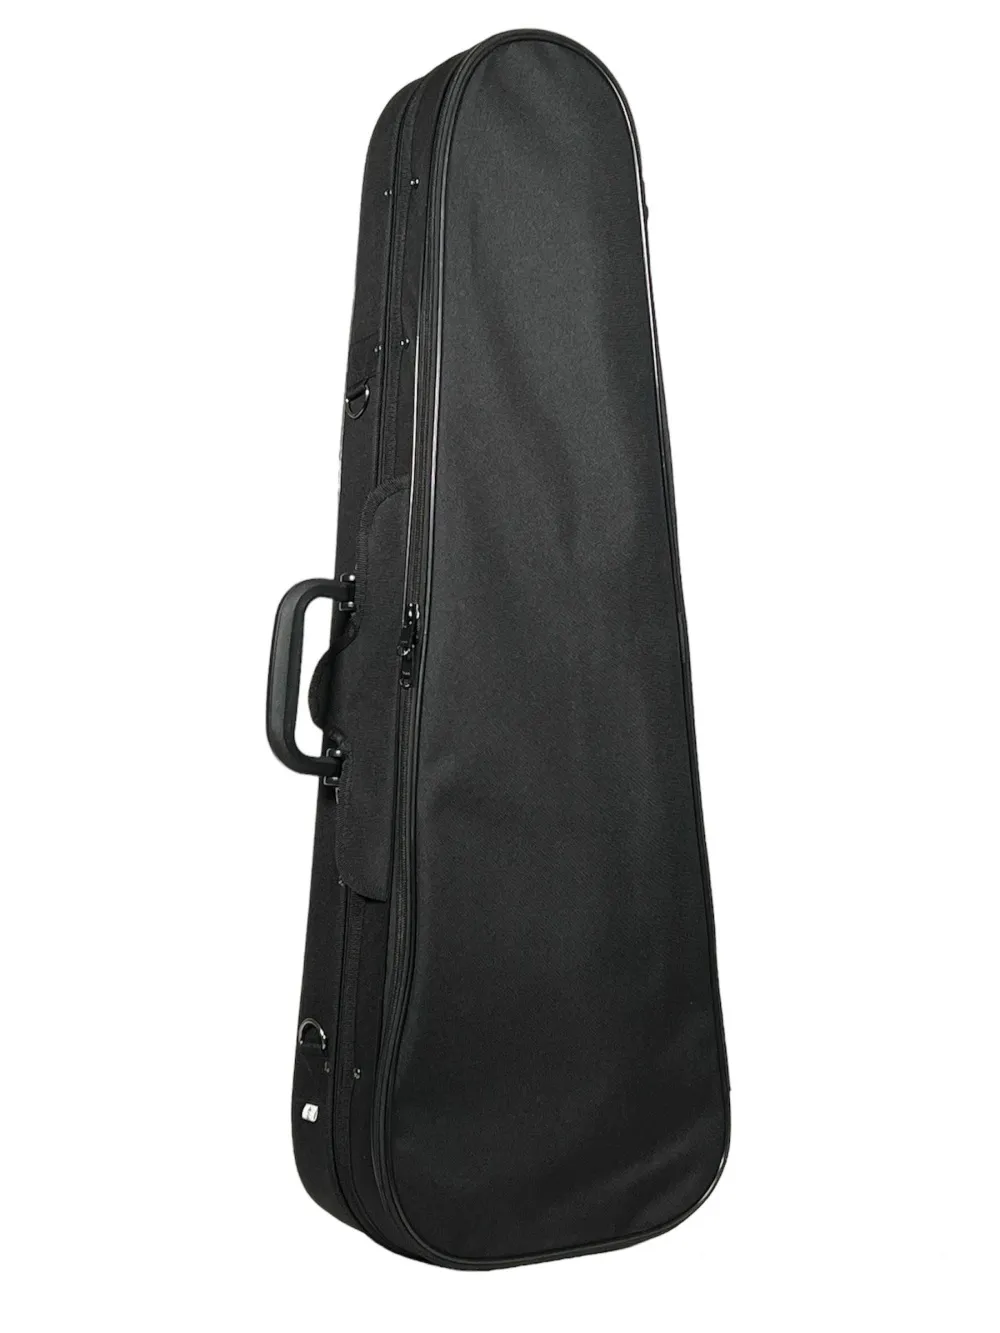 Detailansicht von oben eines Petz Violin (Geige) Form Etuis mit Schulterstützenfach in der Farbe außen schwarz, innen blau